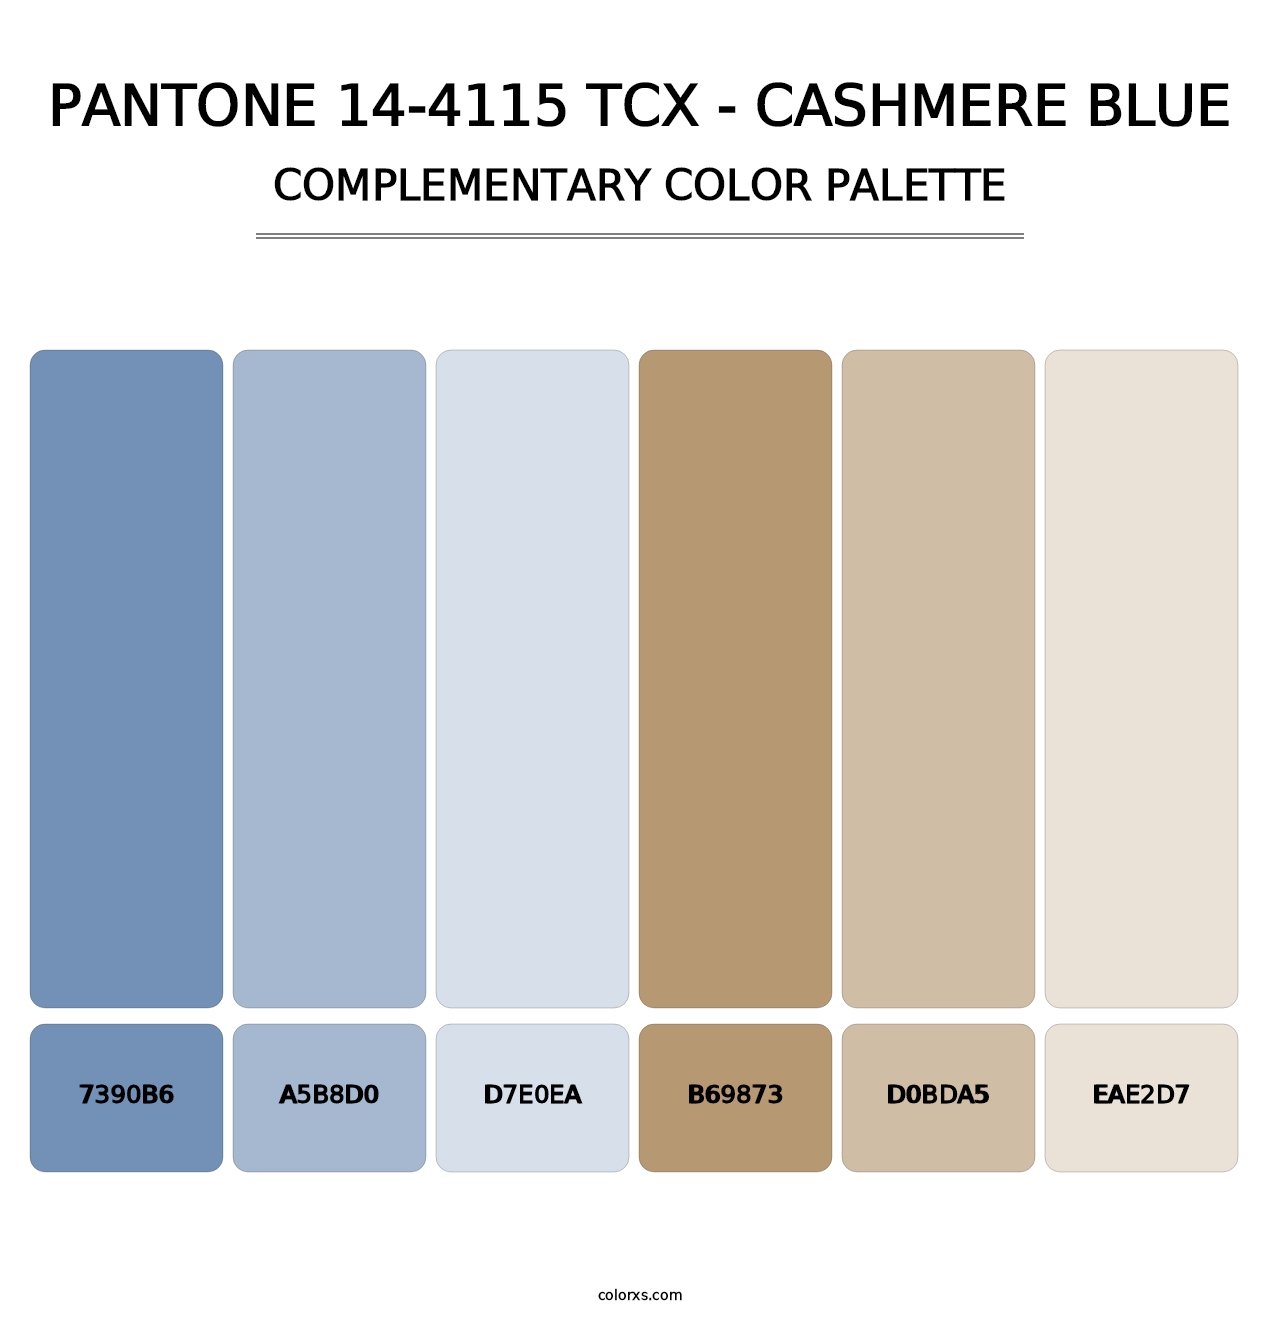 PANTONE 14-4115 TCX - Cashmere Blue - Complementary Color Palette